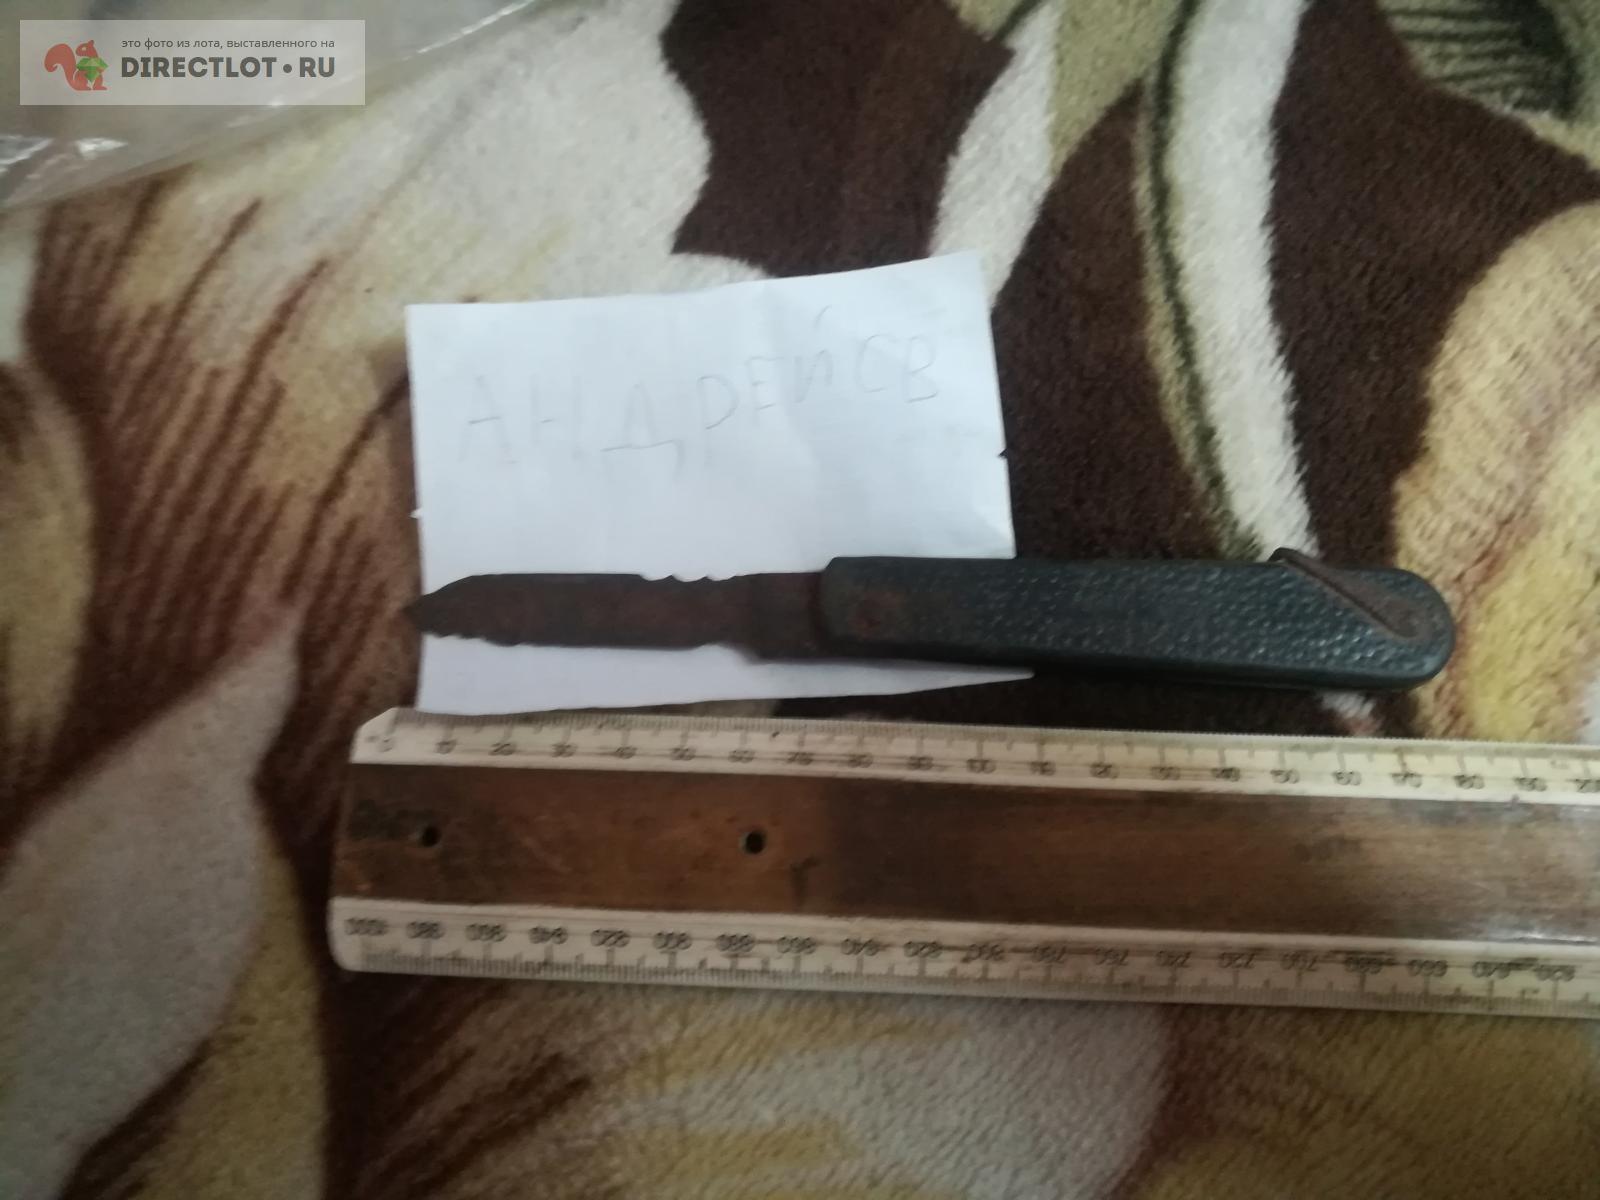 нож электрика на запчасти  в Омске цена 40,00 Р на DIRECTLOT.RU .